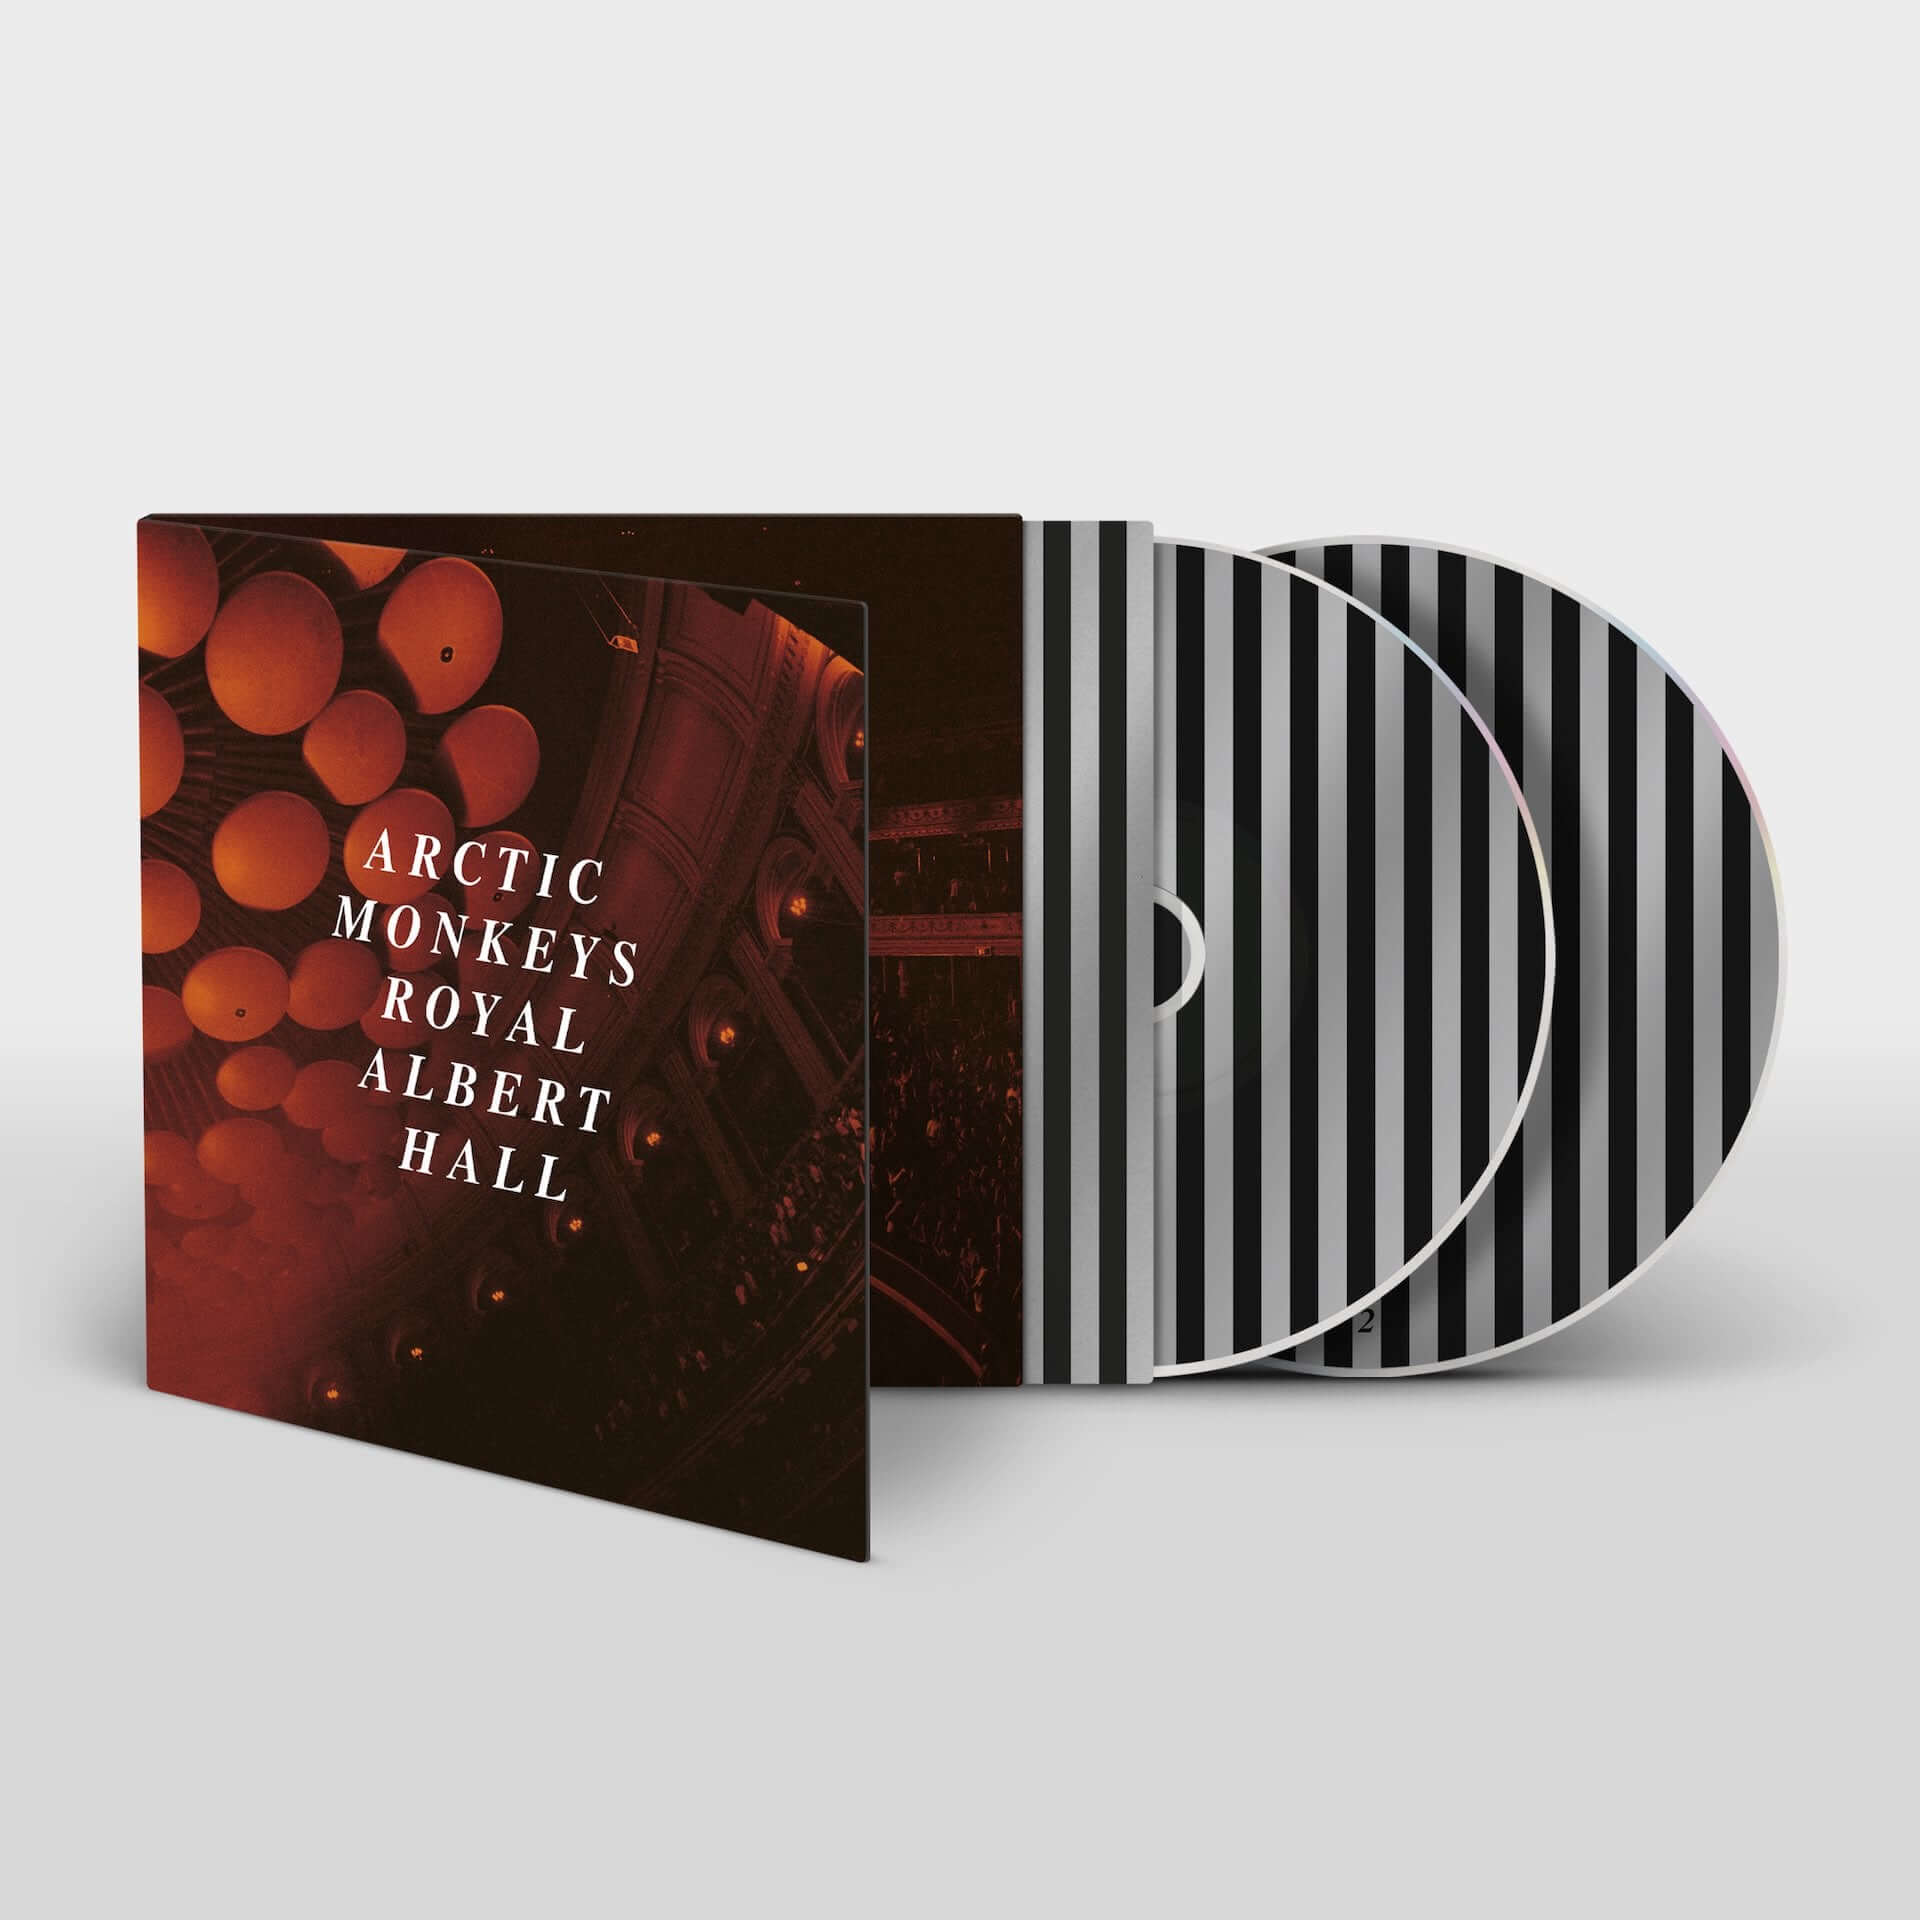 Arctic Monkeysが20曲入りのライブアルバム『Live At The Royal Albert Hall』をリリース決定！収益は全て慈善団体「War Child UK」に寄付 music201030_arctic-monkeys_4-1920x1920